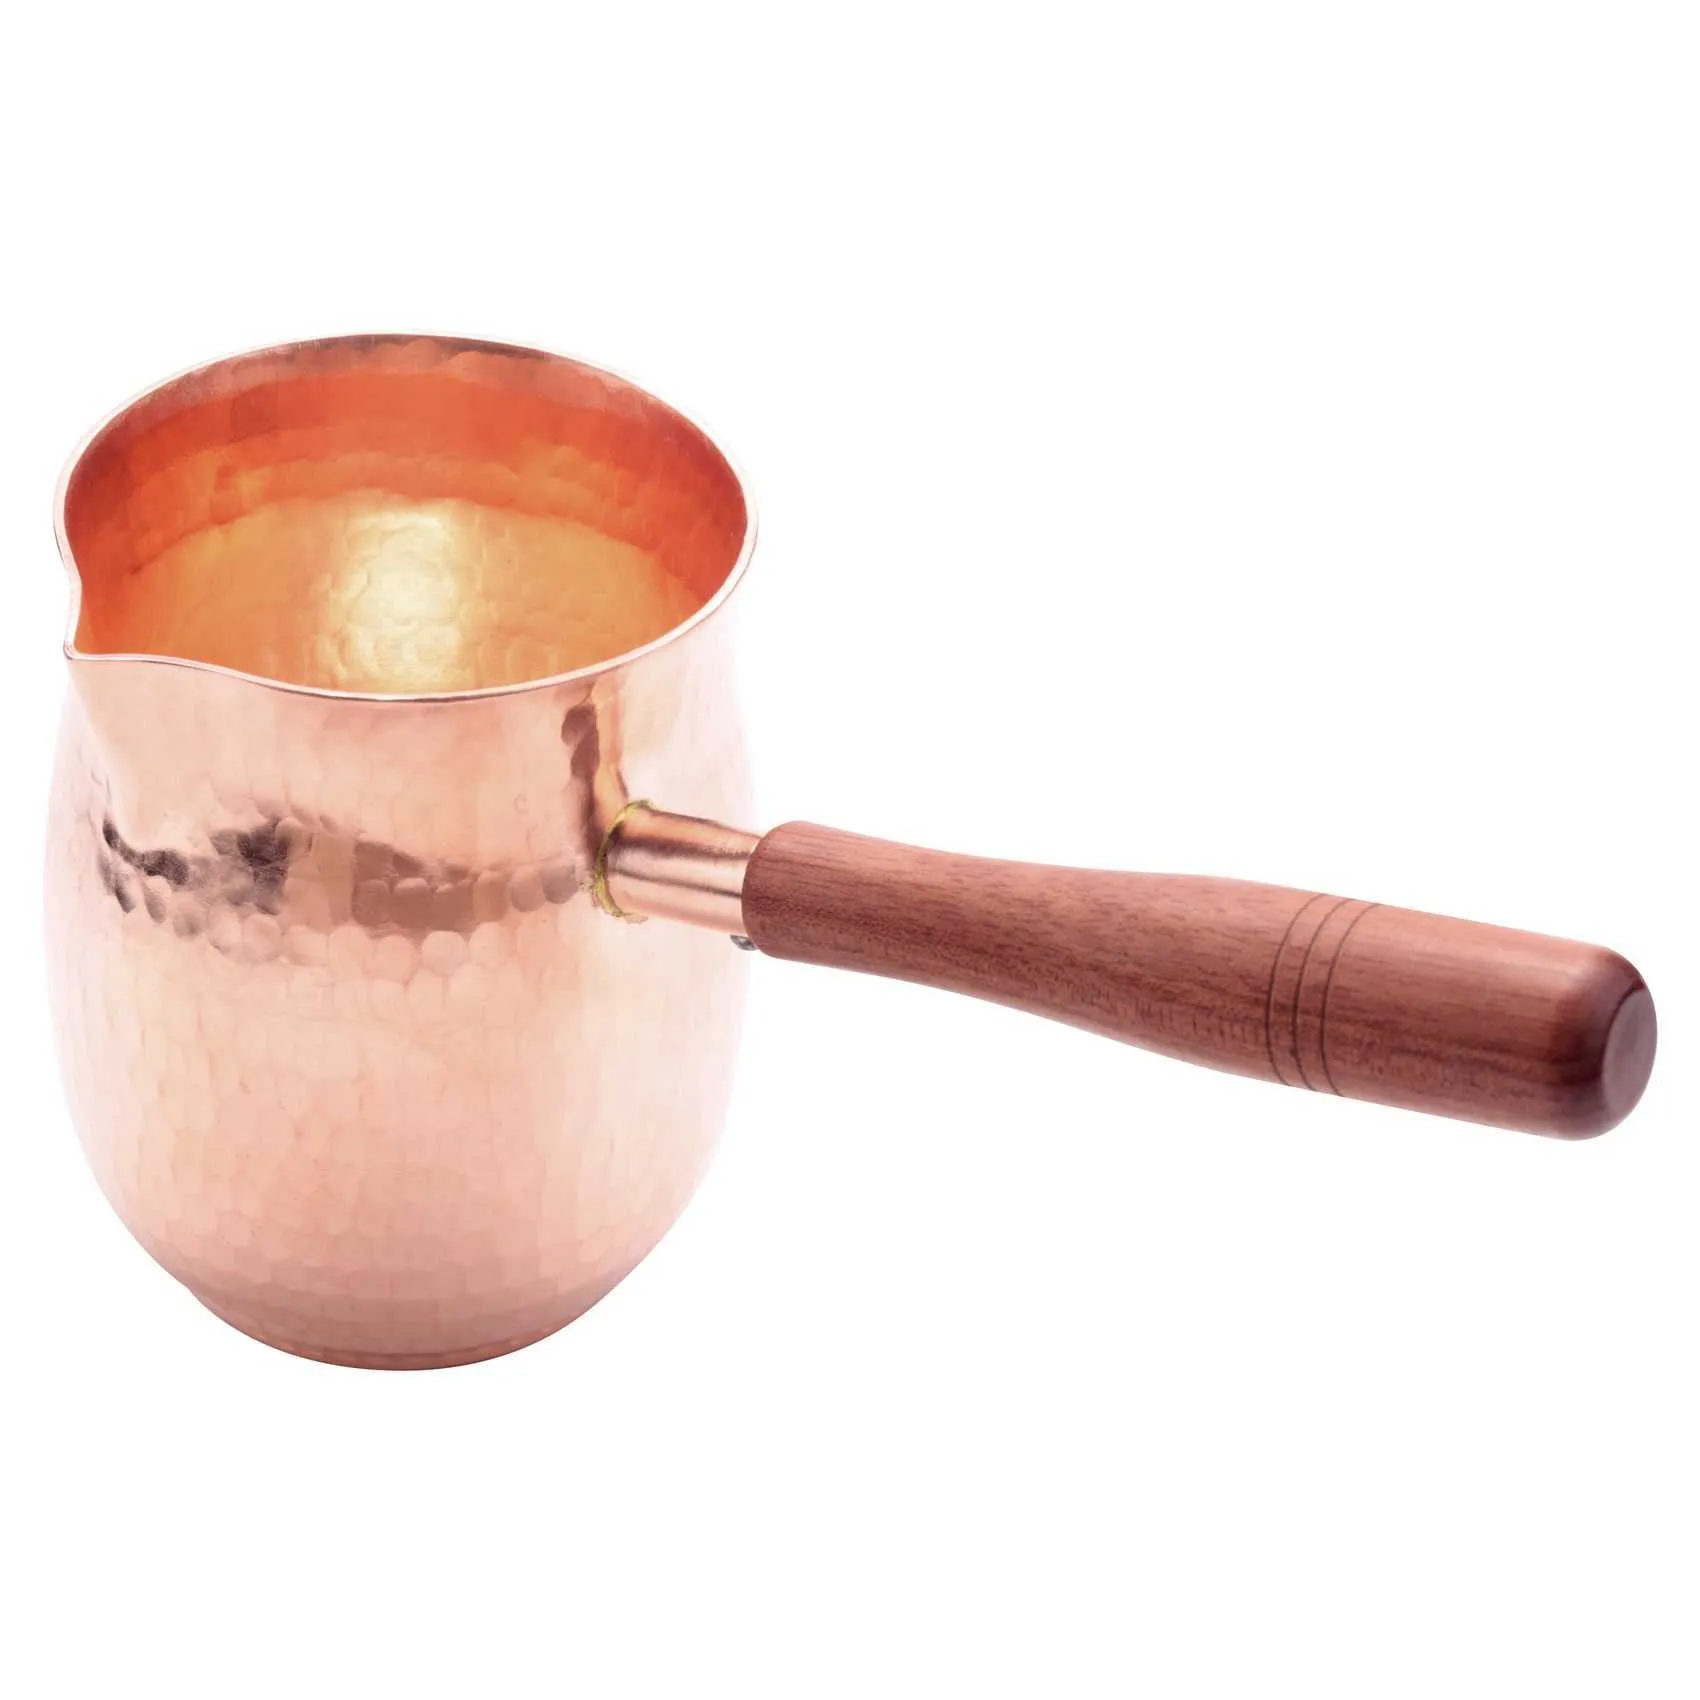 コーヒーポット450ml純粋な銅の手作りコーヒーティーセットトルコギリシャのアラビア語コーヒーポット木製ハンドル用バリスタP230508用